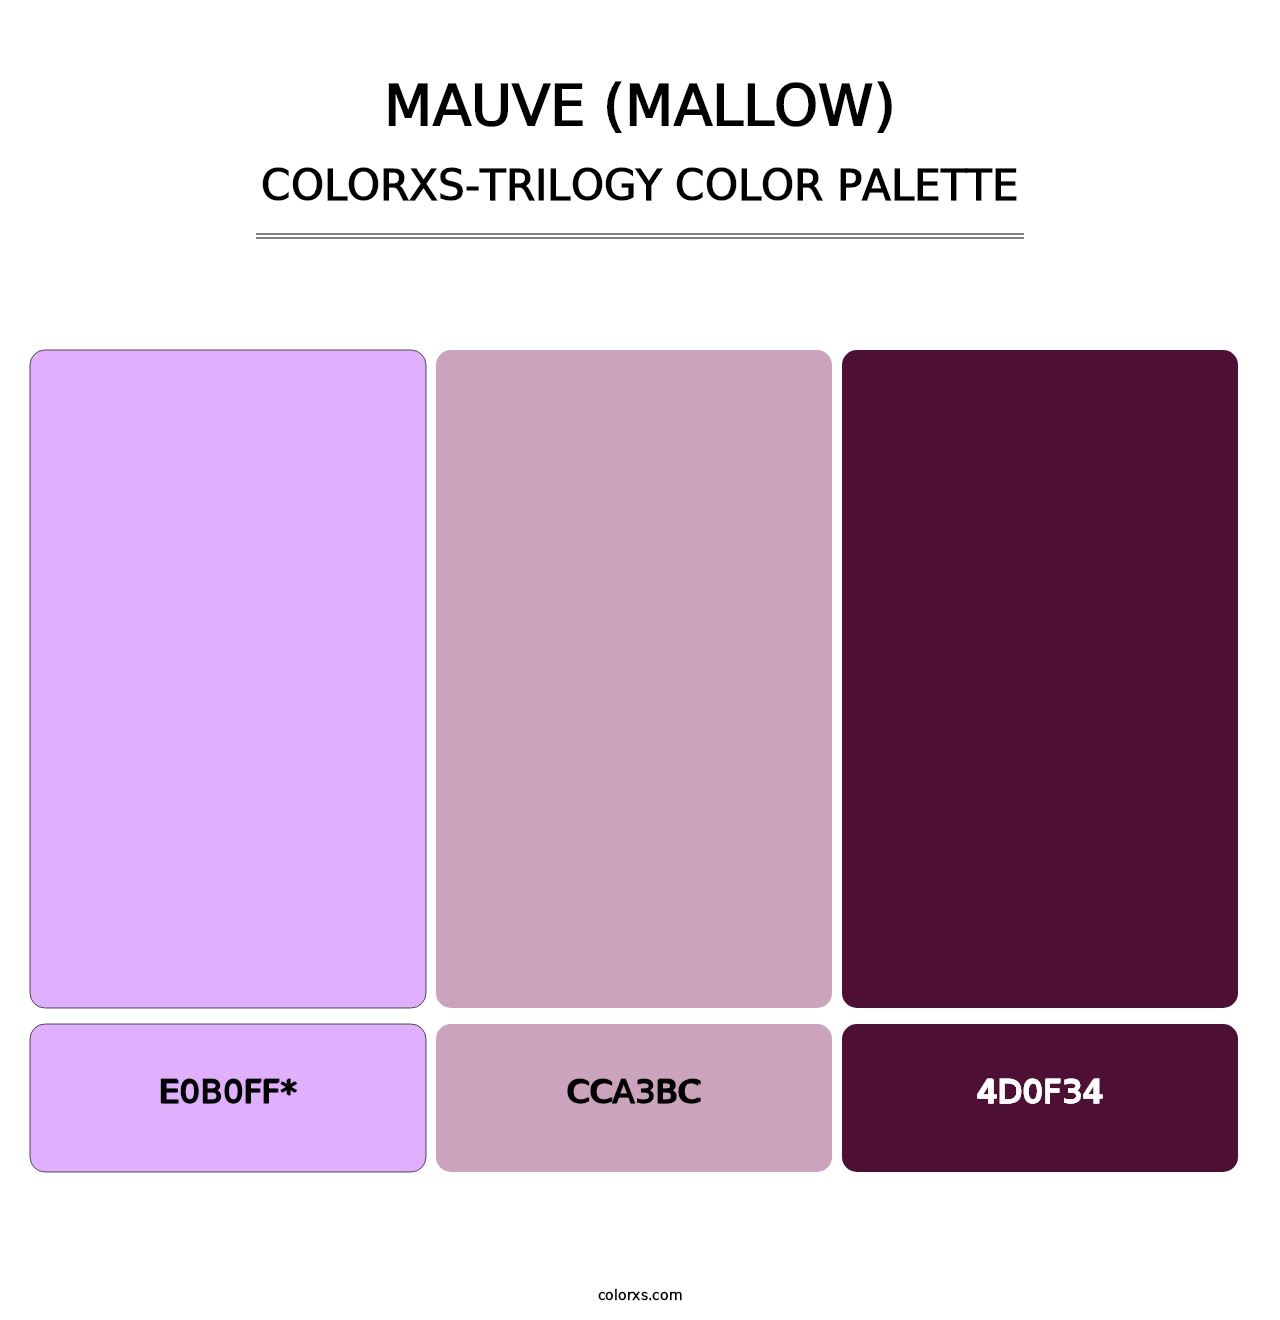 Mauve (Mallow) - Colorxs Trilogy Palette